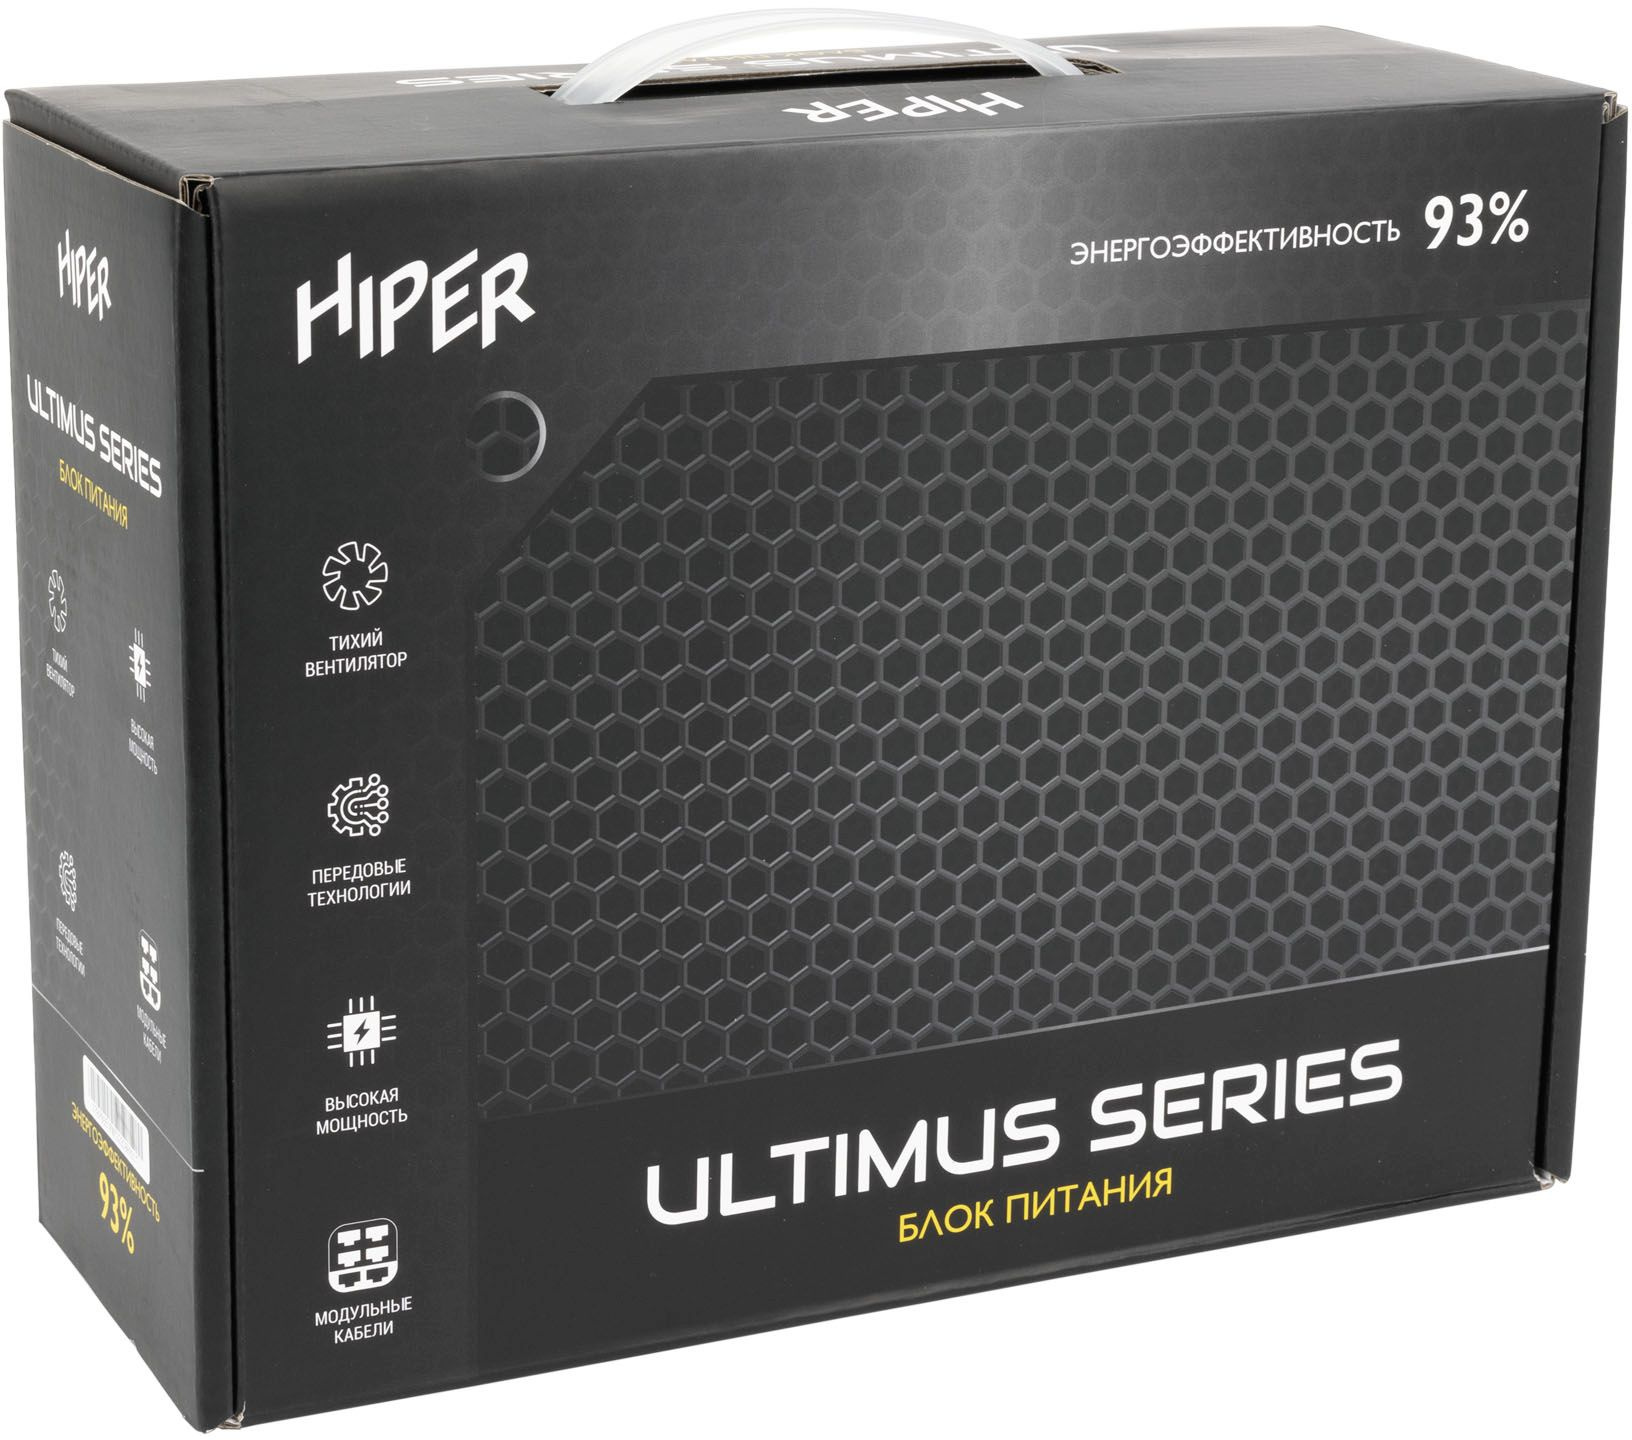   HIPER HPB-650FMK2,  650,  120,  , retail